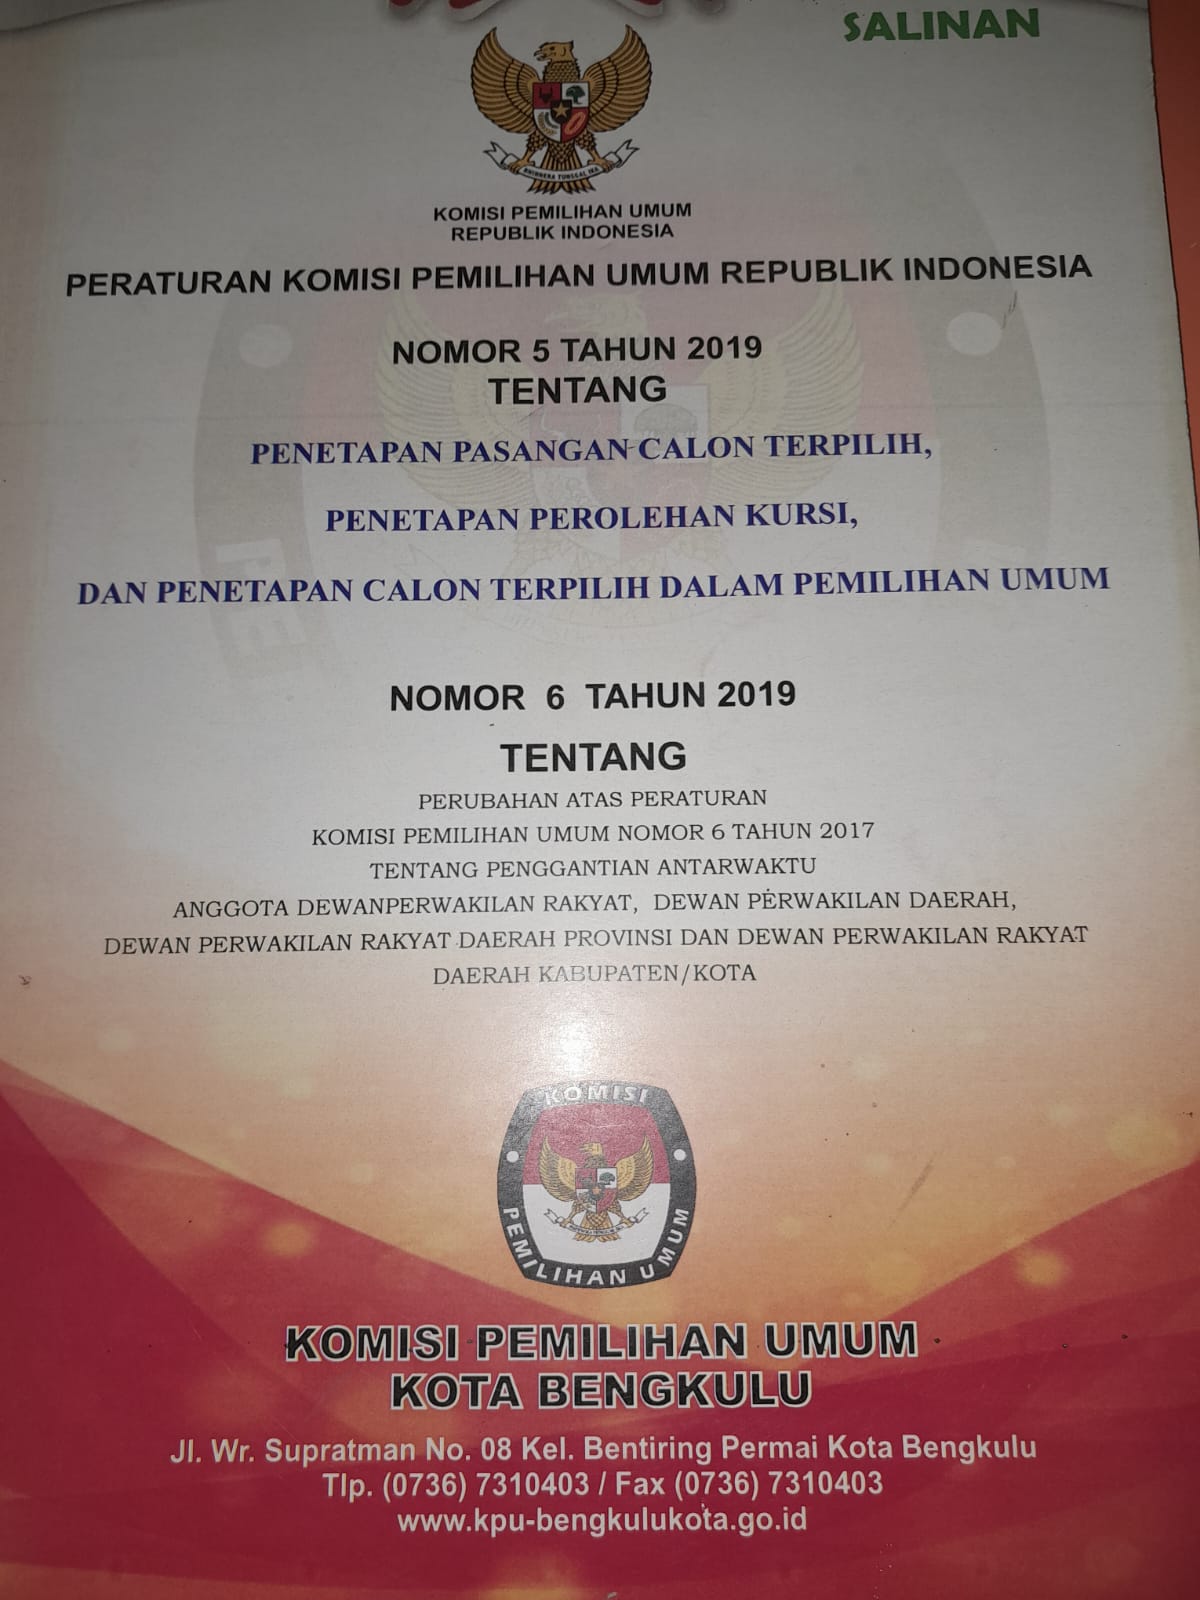 PERATURAN KOMISI PEMILIHAN UMUM REPUBLIK INDONESIA NOMOR 5 TAHUN 2019